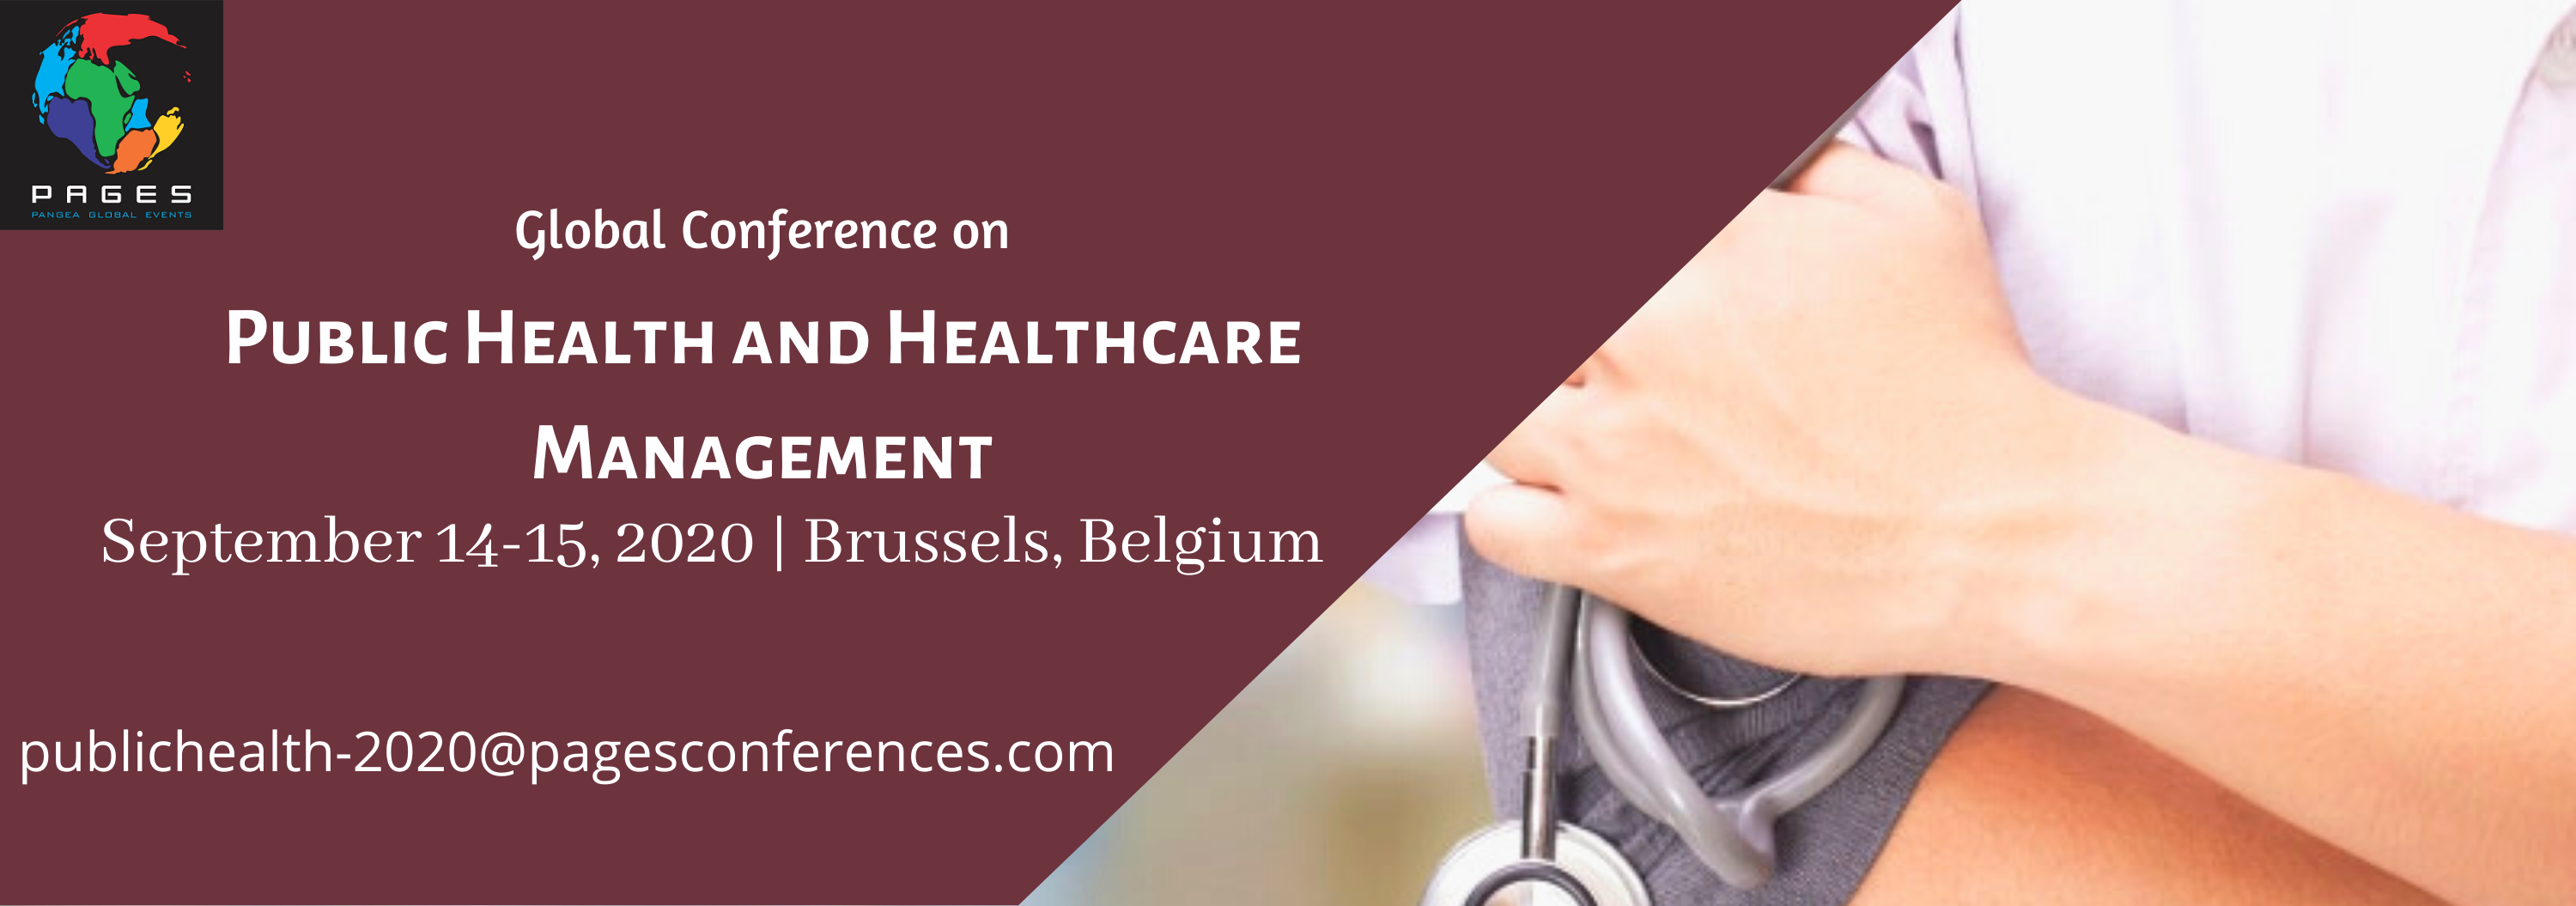 Public Health conferences-2020 | Healthcare Management Confe, Brussels, Bruxelles-Capitale, Belgium